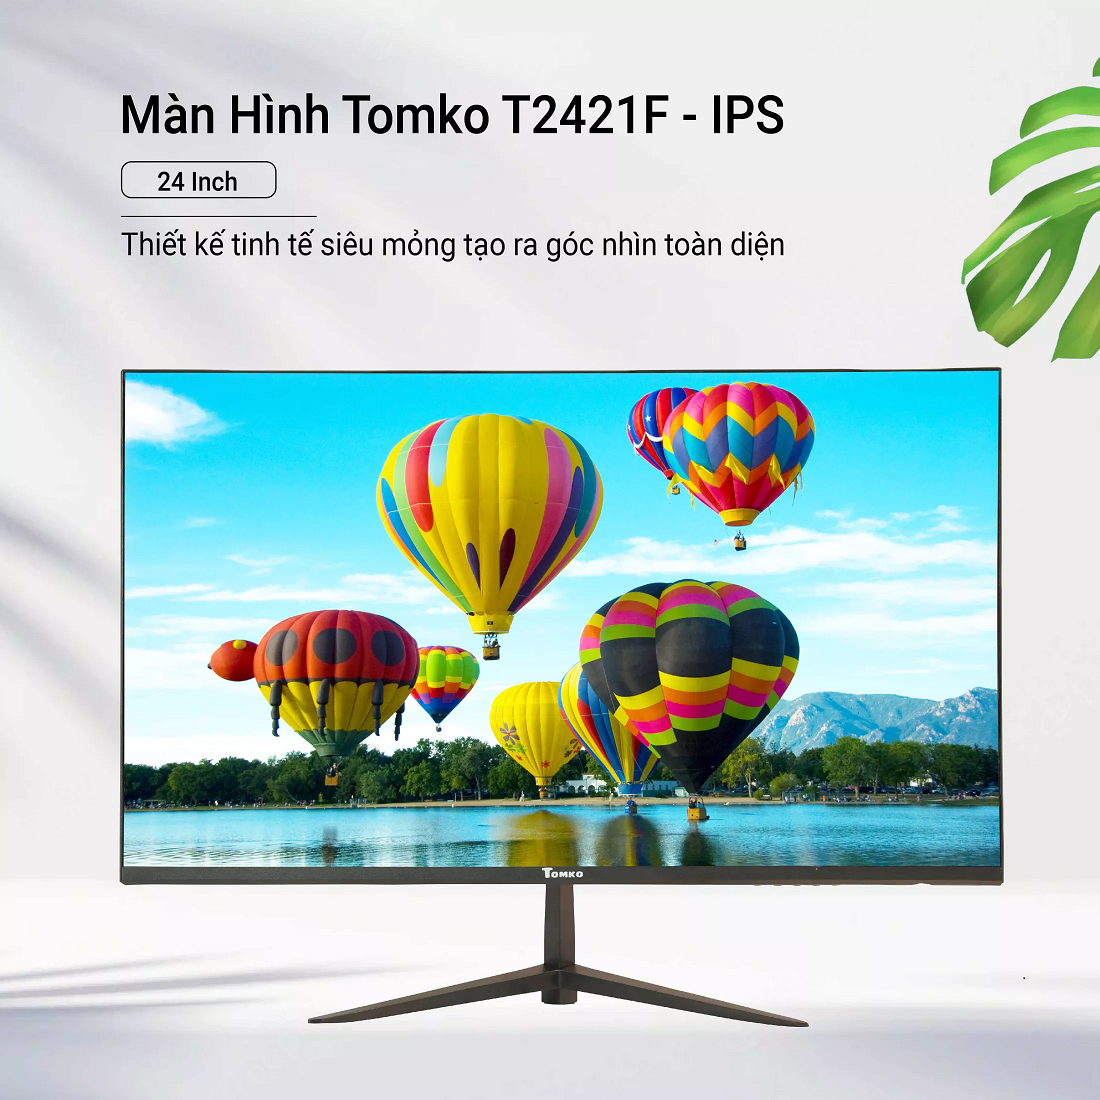 Màn hình máy tính Tomko T2421F 24 inch full viền IPS 75Hz – Siêu chất lượng - Hàng Chính Hãng Tomko